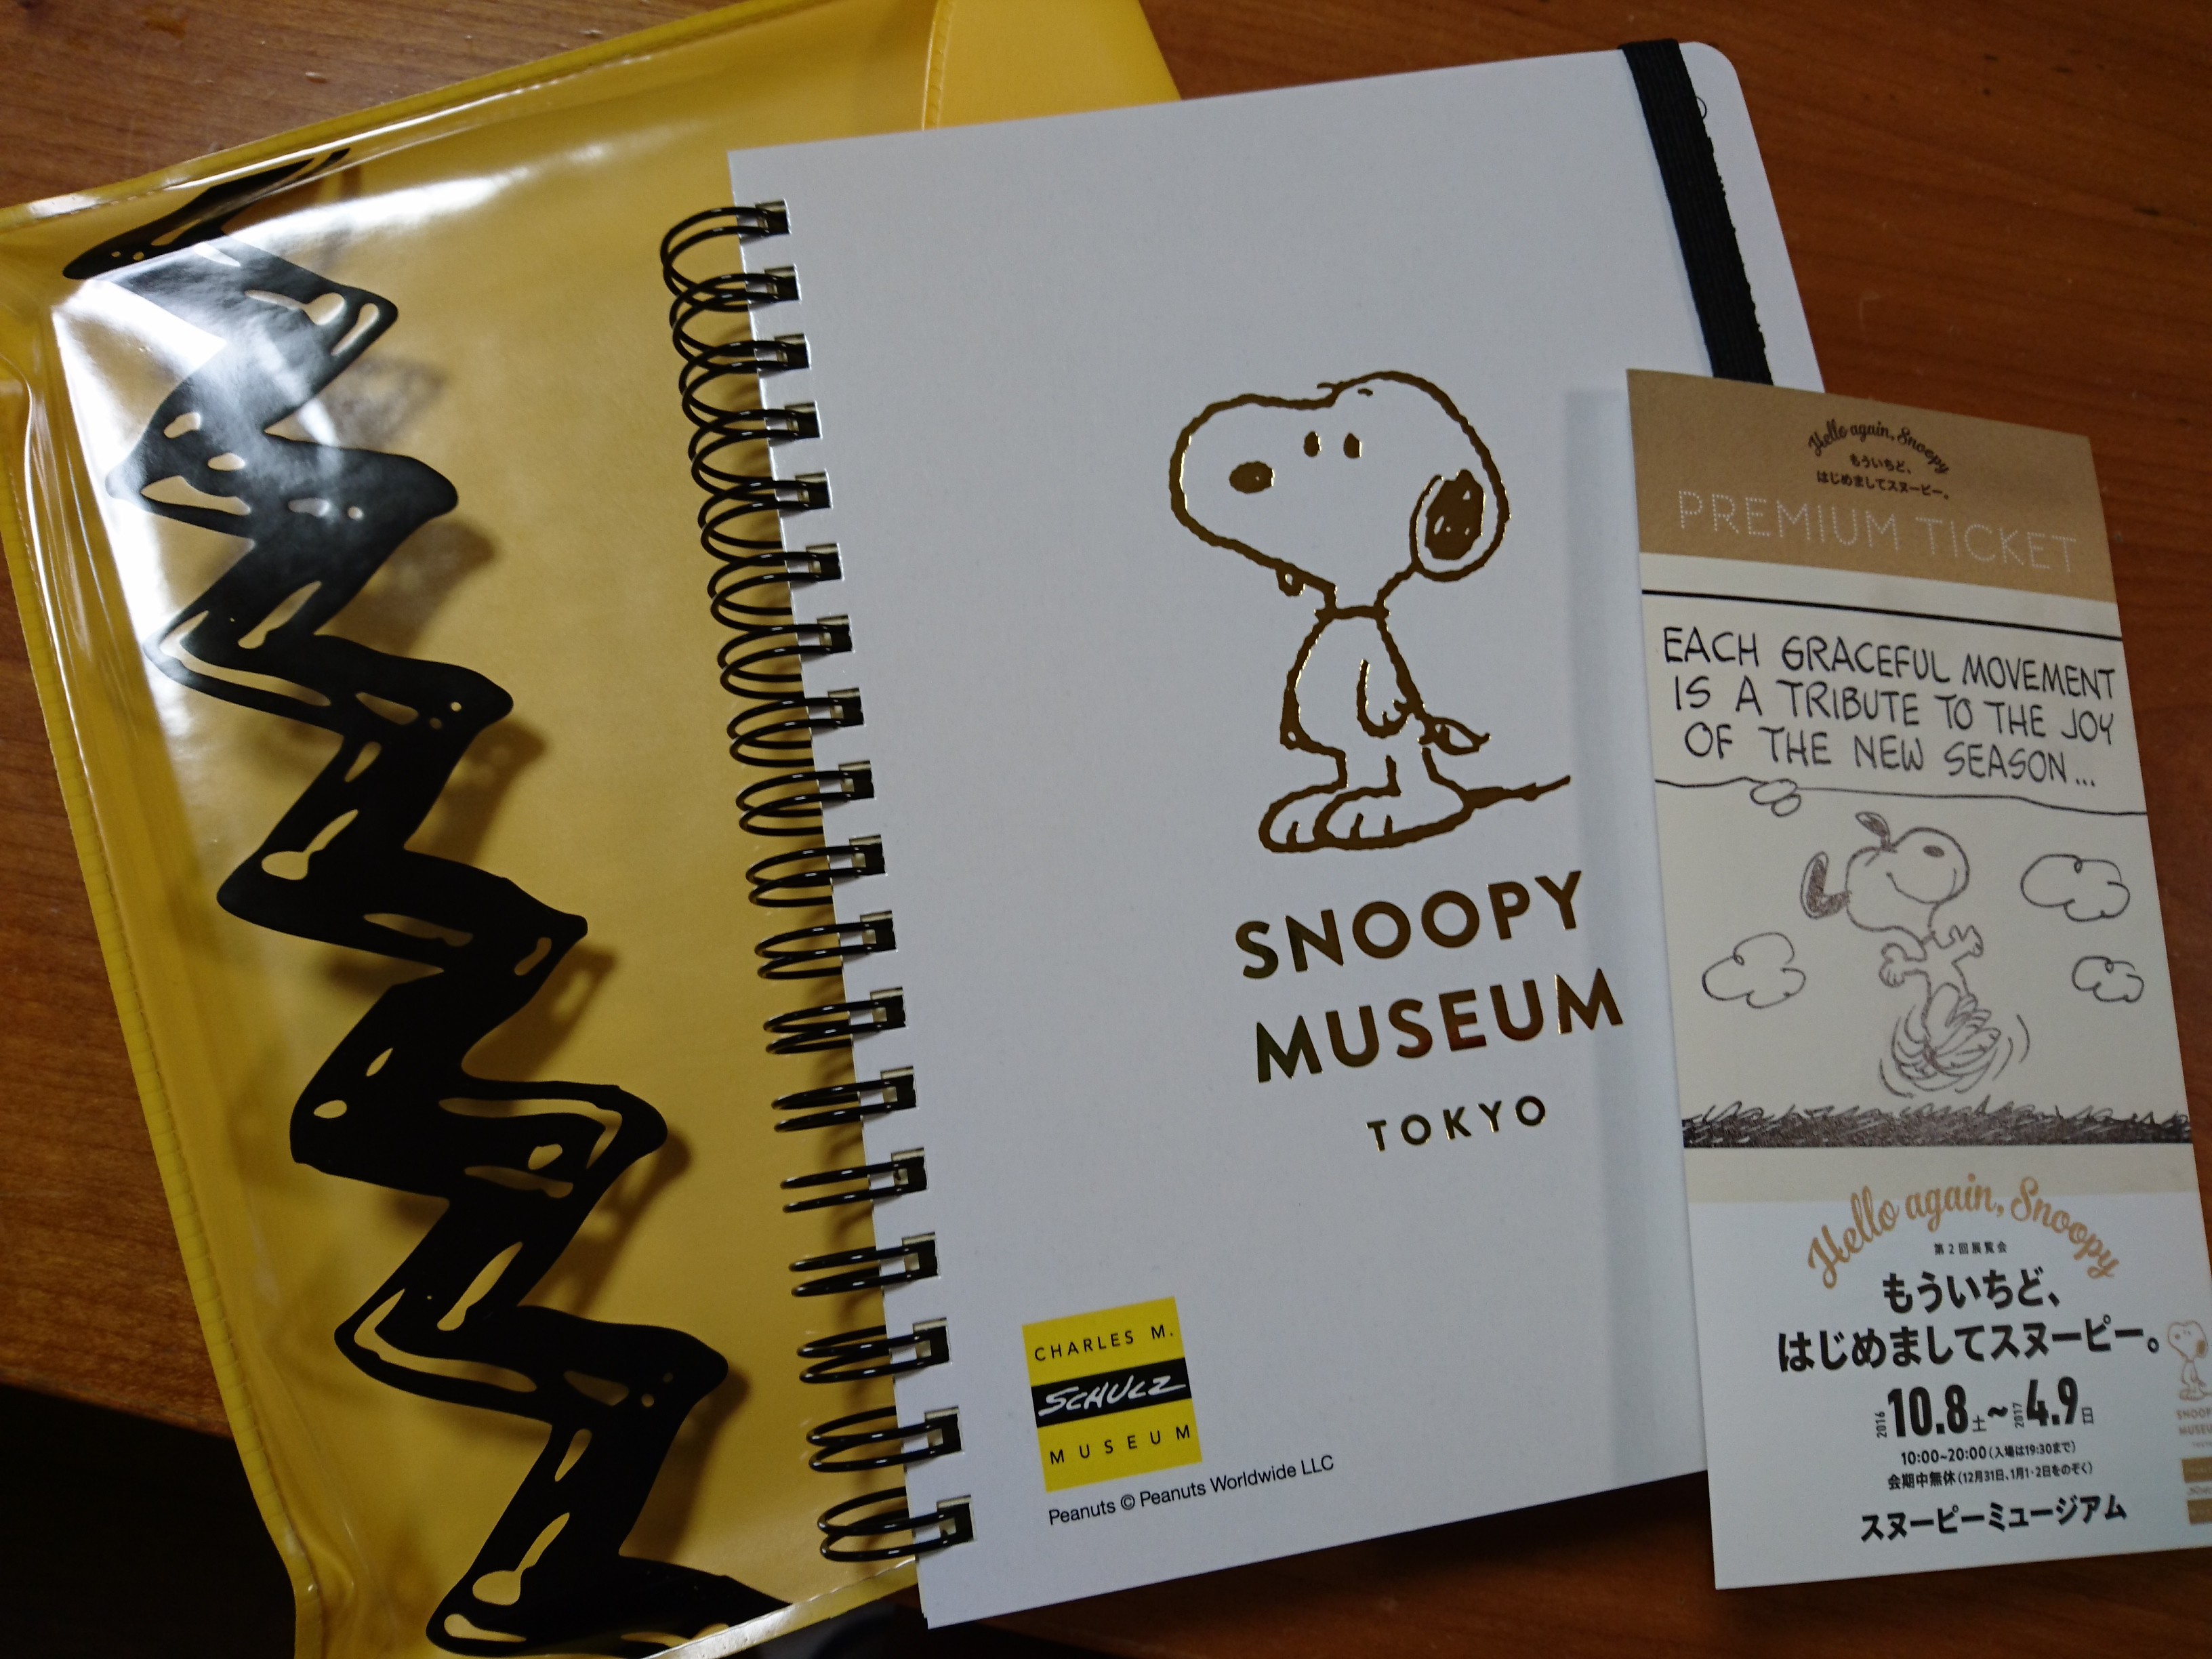 Snoopy Museum Tokyo スヌーピーミュージアム 第2回展覧会 もういちど はじめましてスヌーピー へ 冥王星へ連れてって